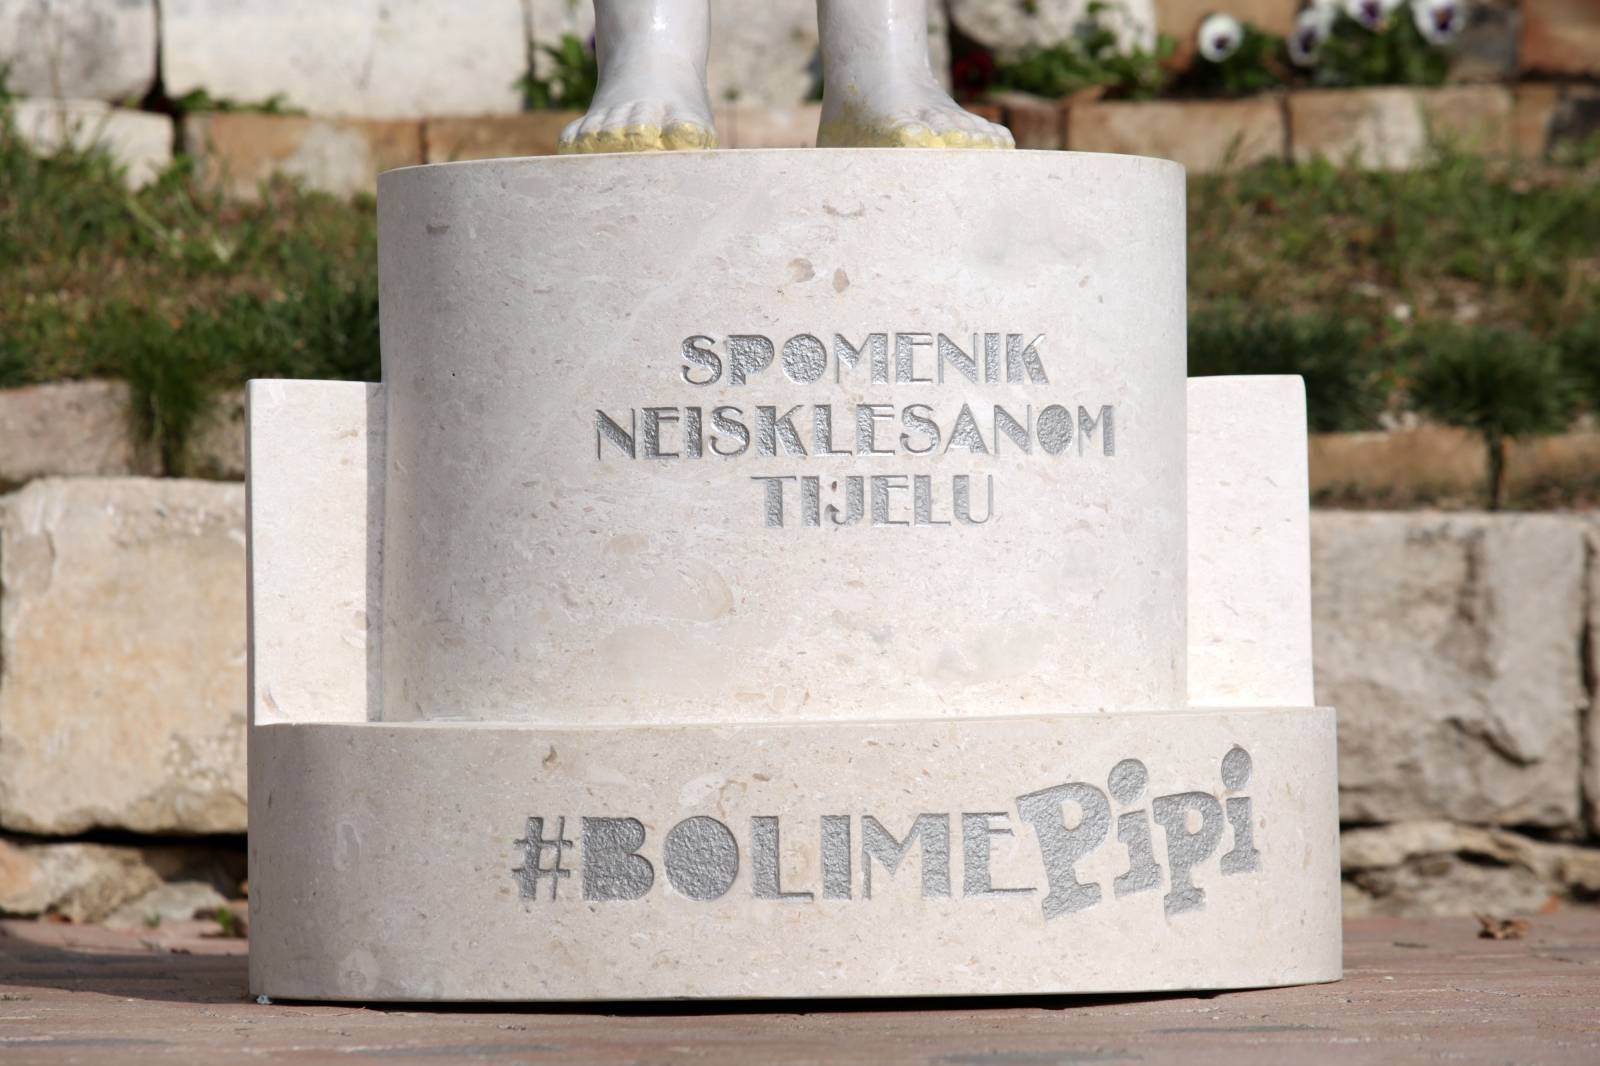 Split: Na BaÄvicama postavljen spomenik neisklesanm tijelu koji slavi Å¾enske obline